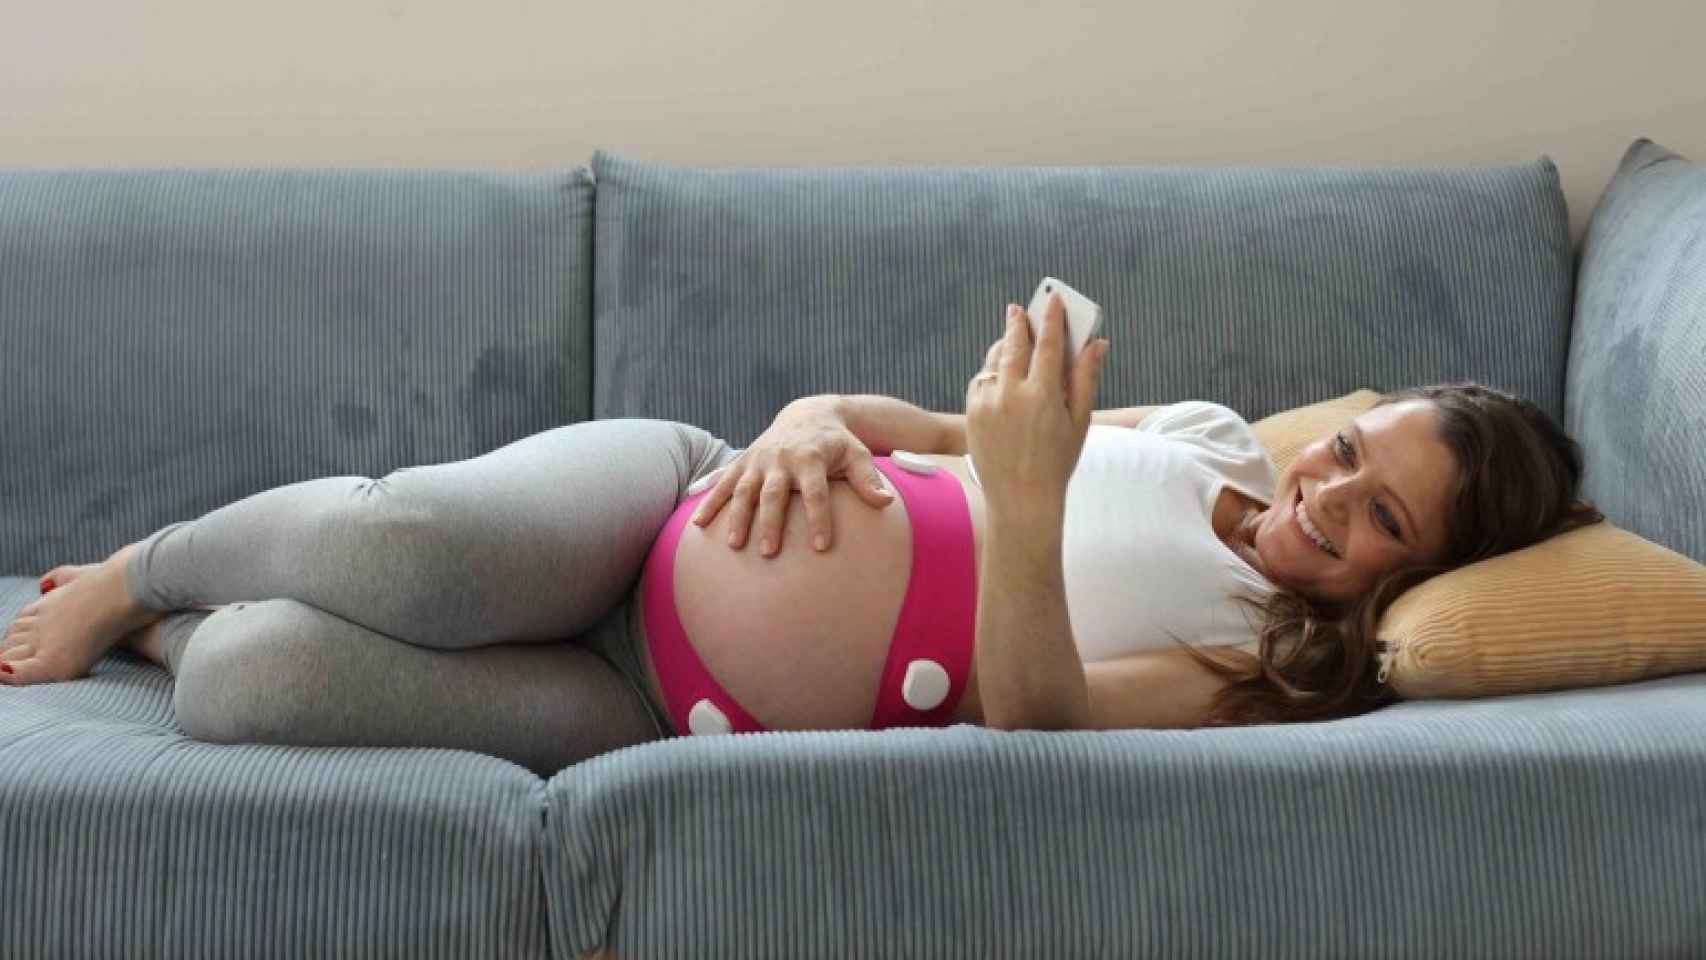 Tu Android también puede ayudarte a controlar tu embarazo